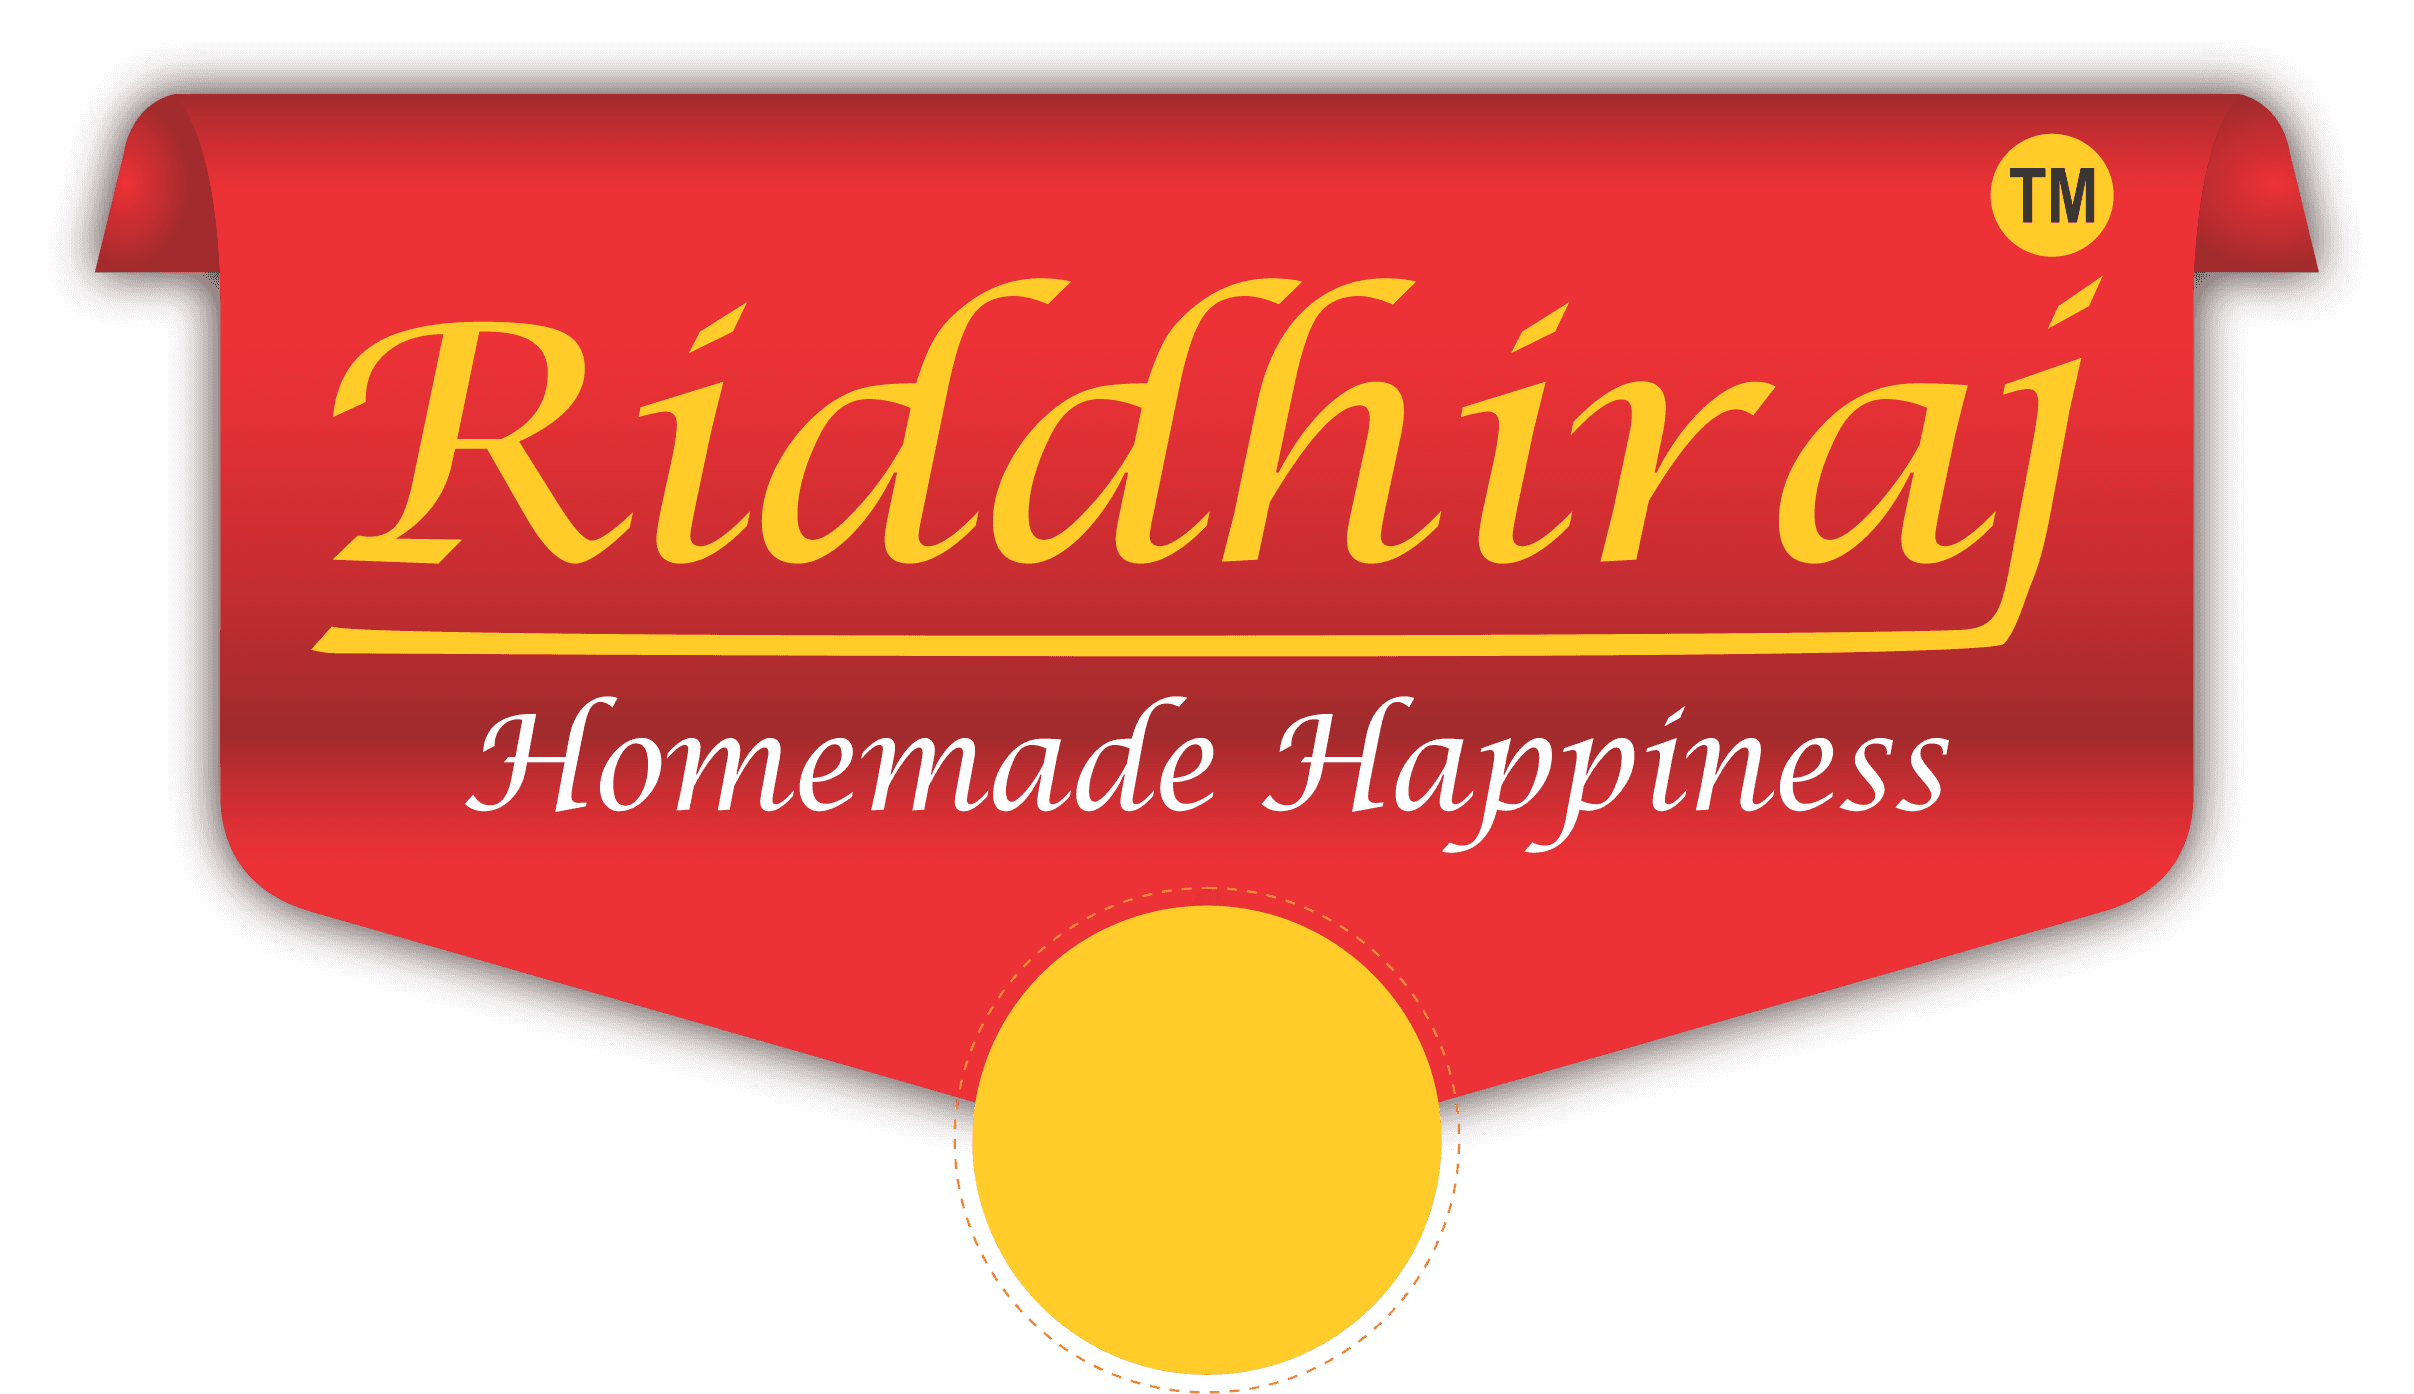 Riddhiraj Homemade Happiness